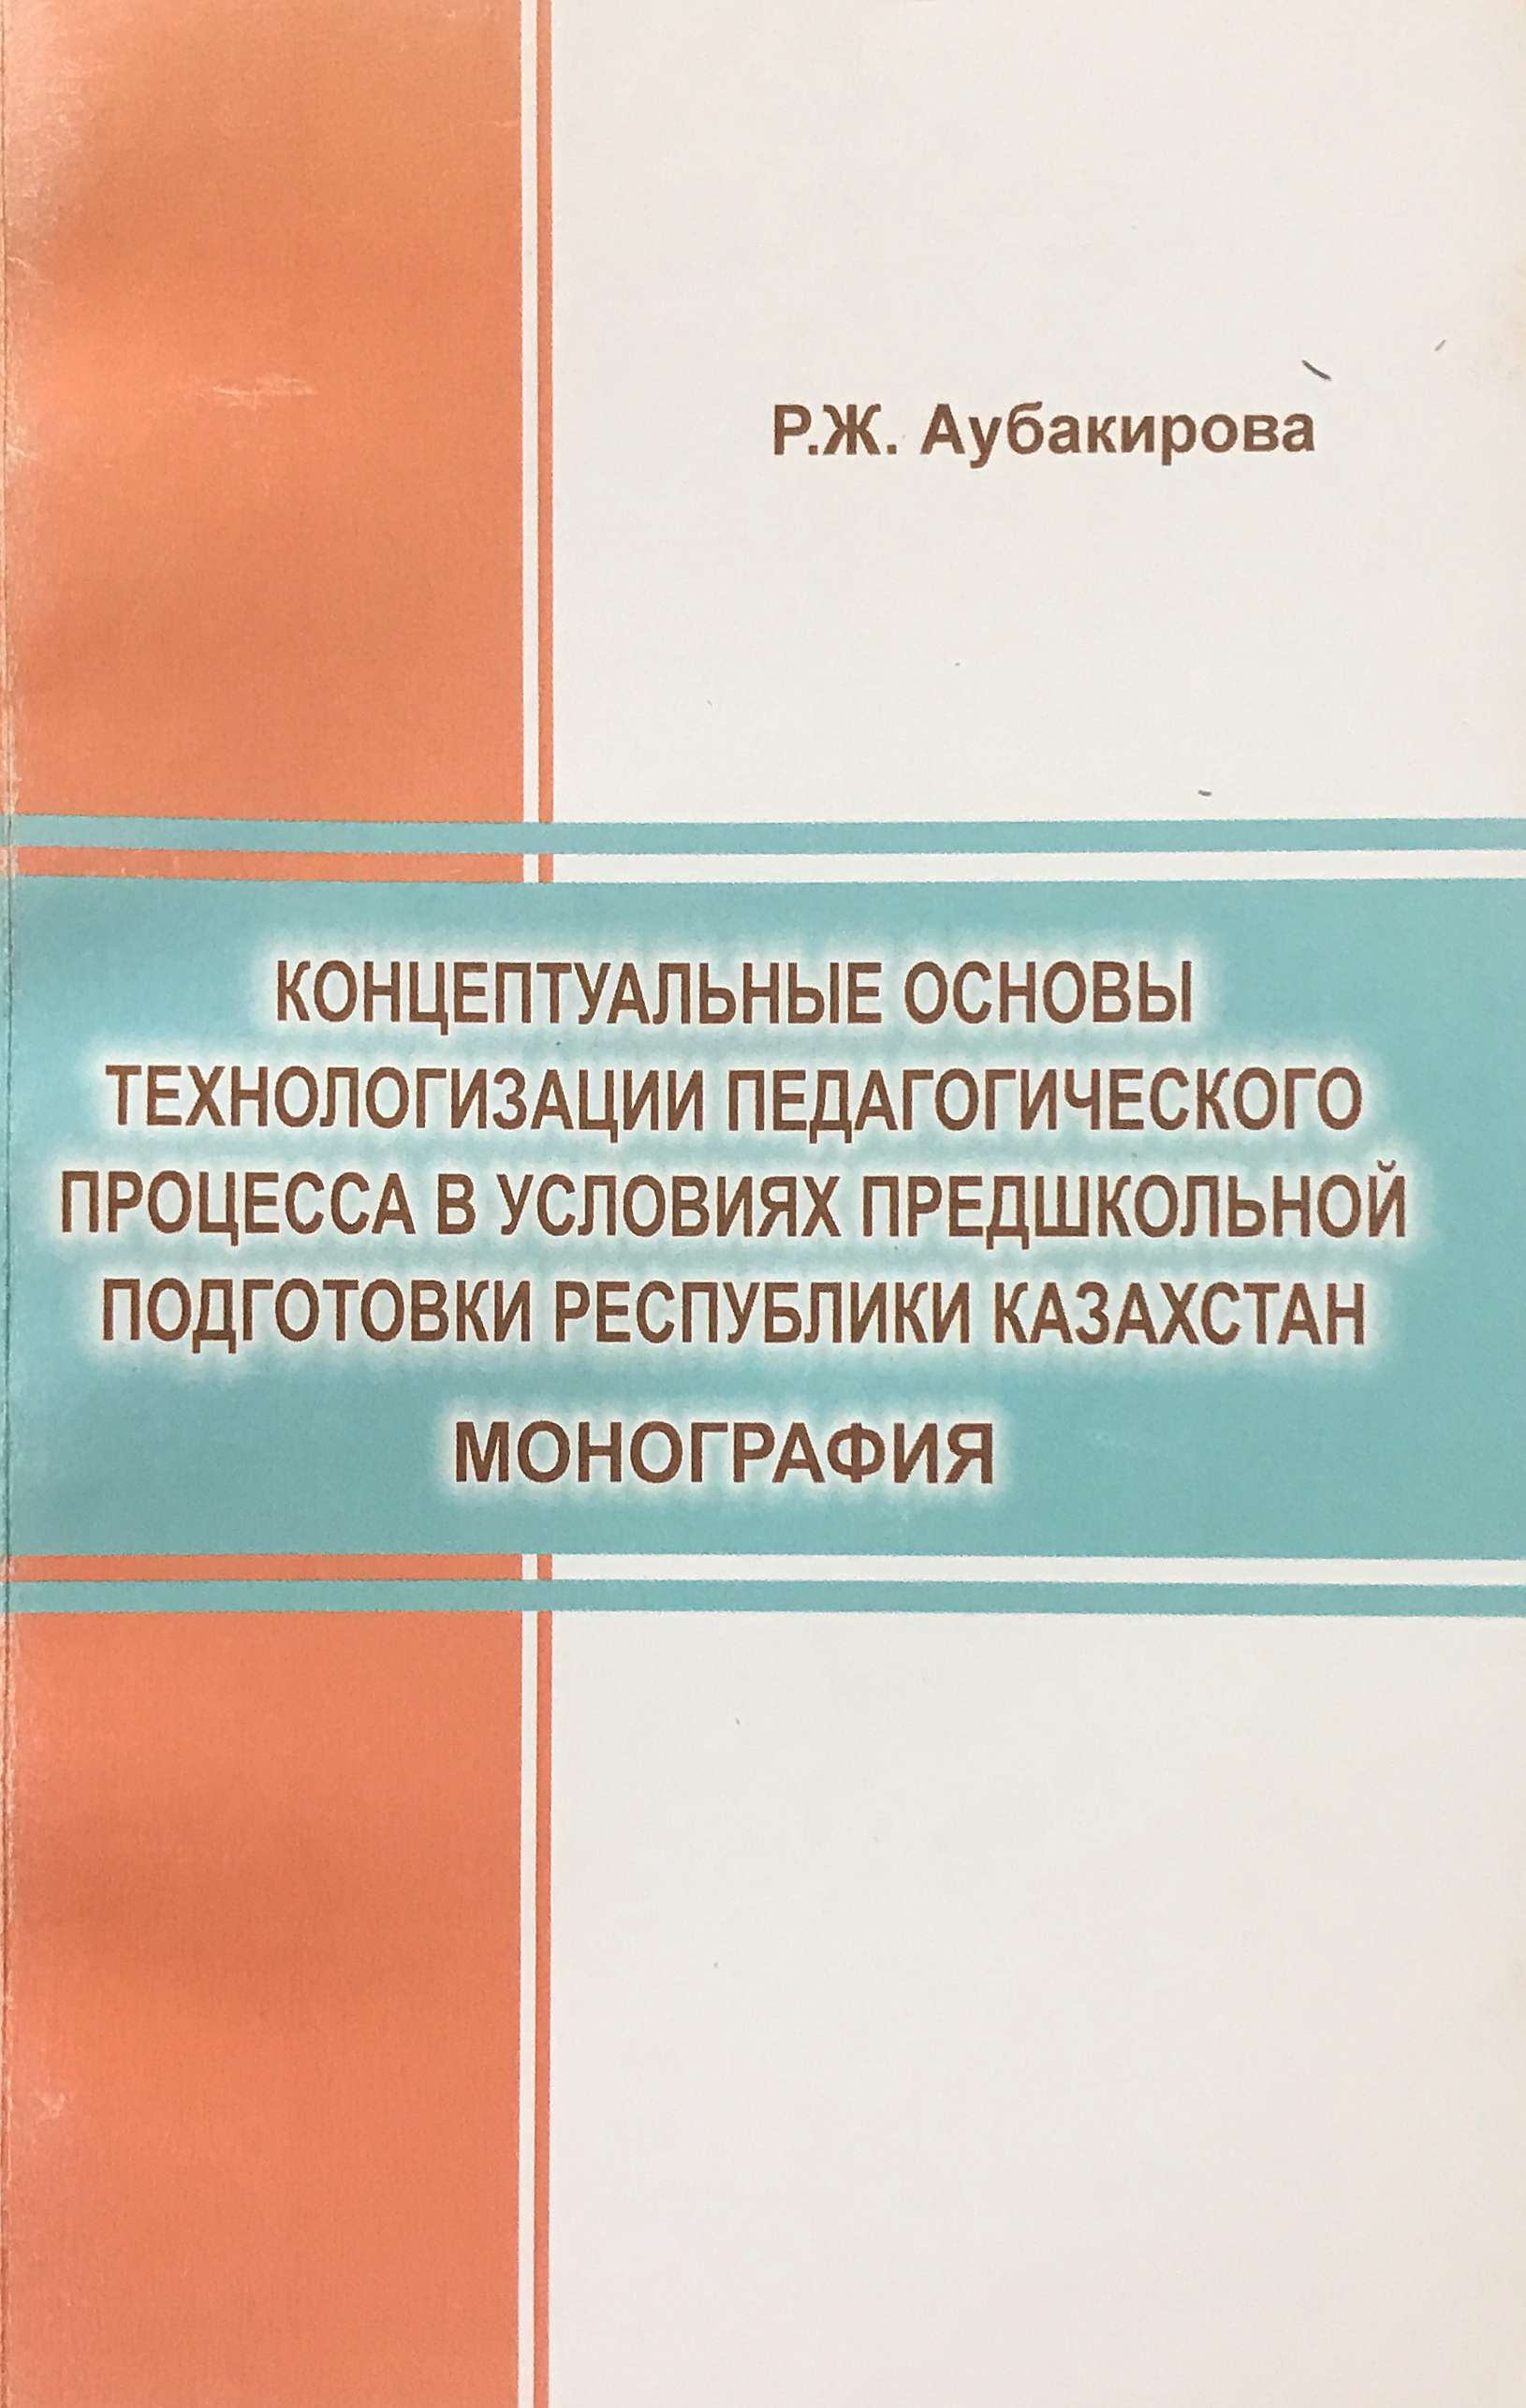 Концептуальные основы технологизации педагогического процесса в условиях предшкольной подготовки Республики Казахстан